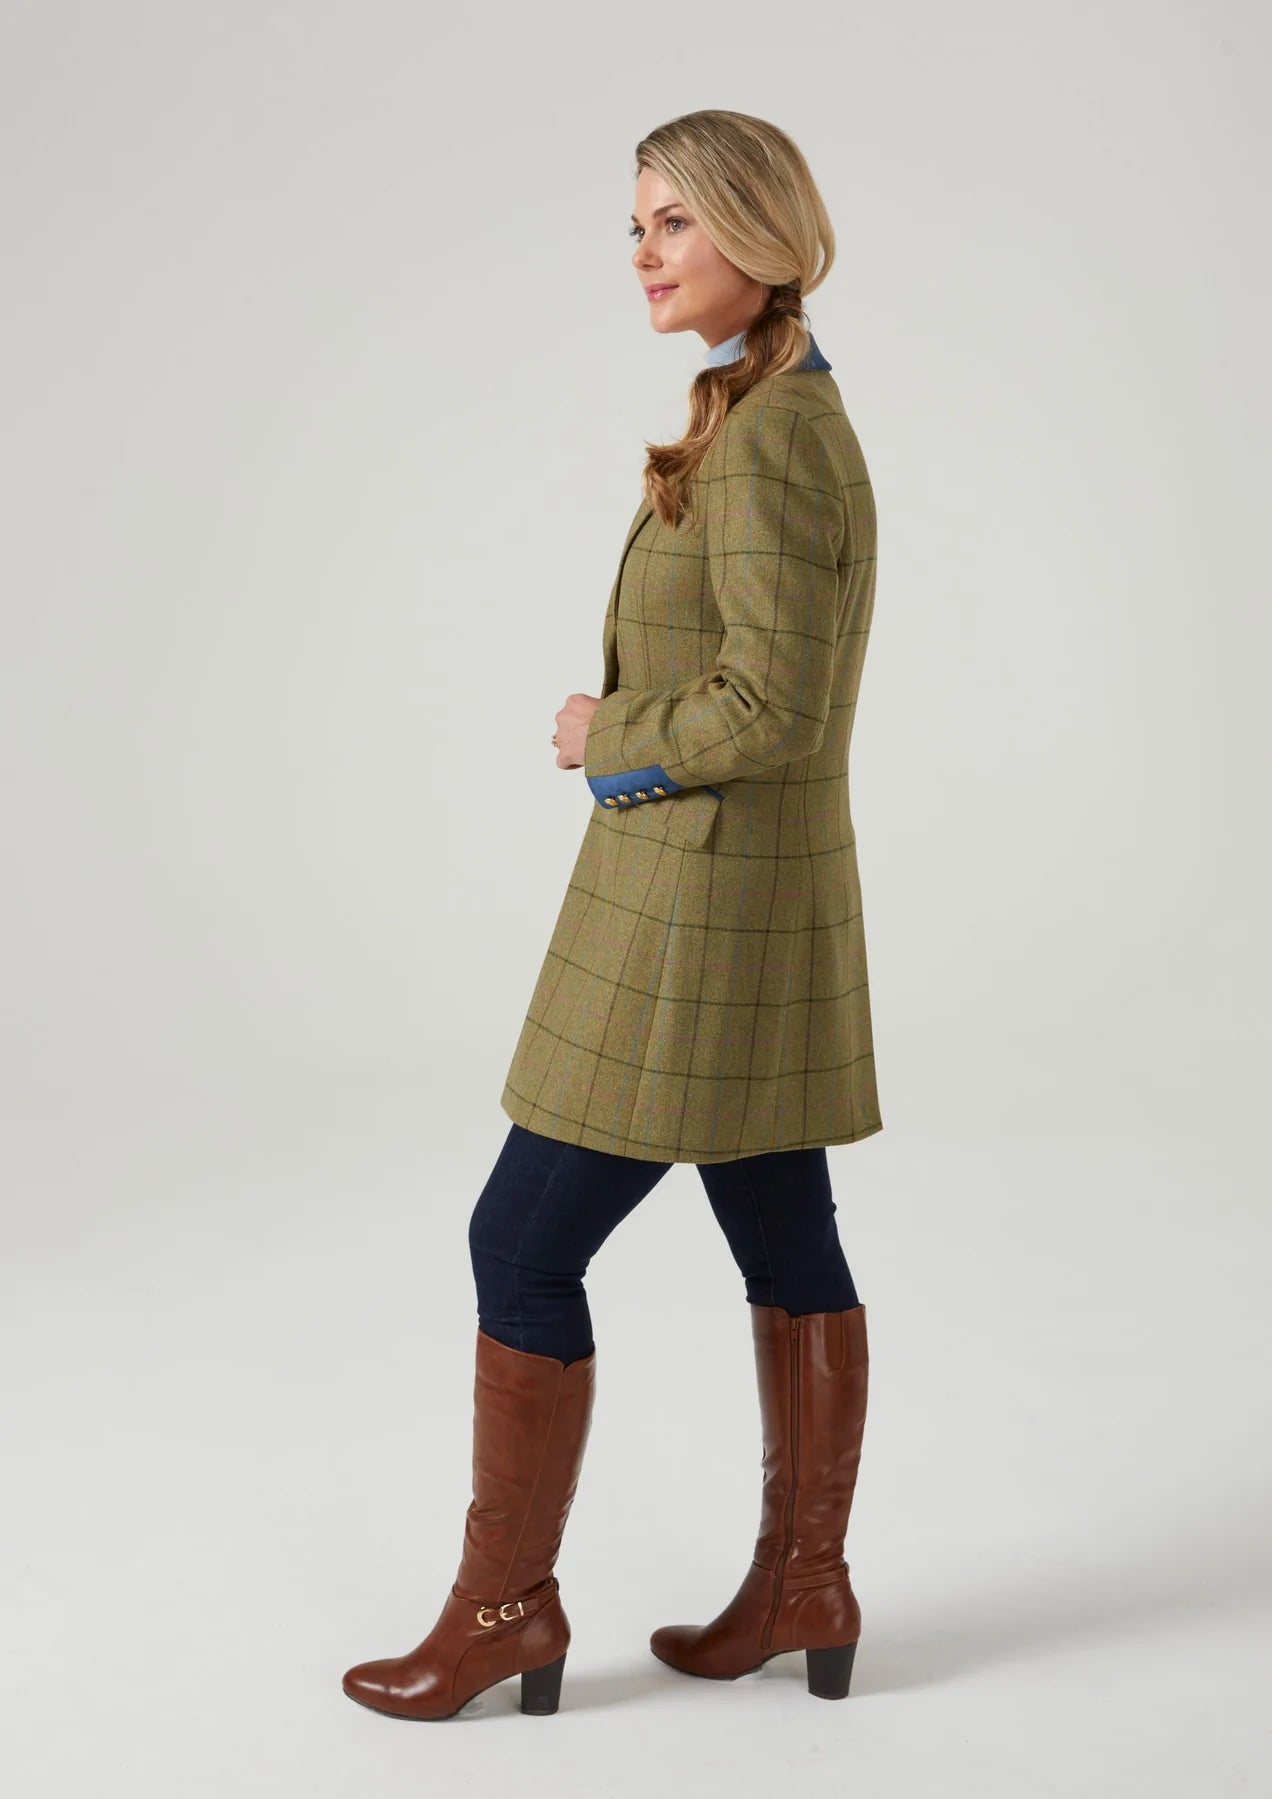 Combrook Tweed Women's Mid-Size Shooting Coat